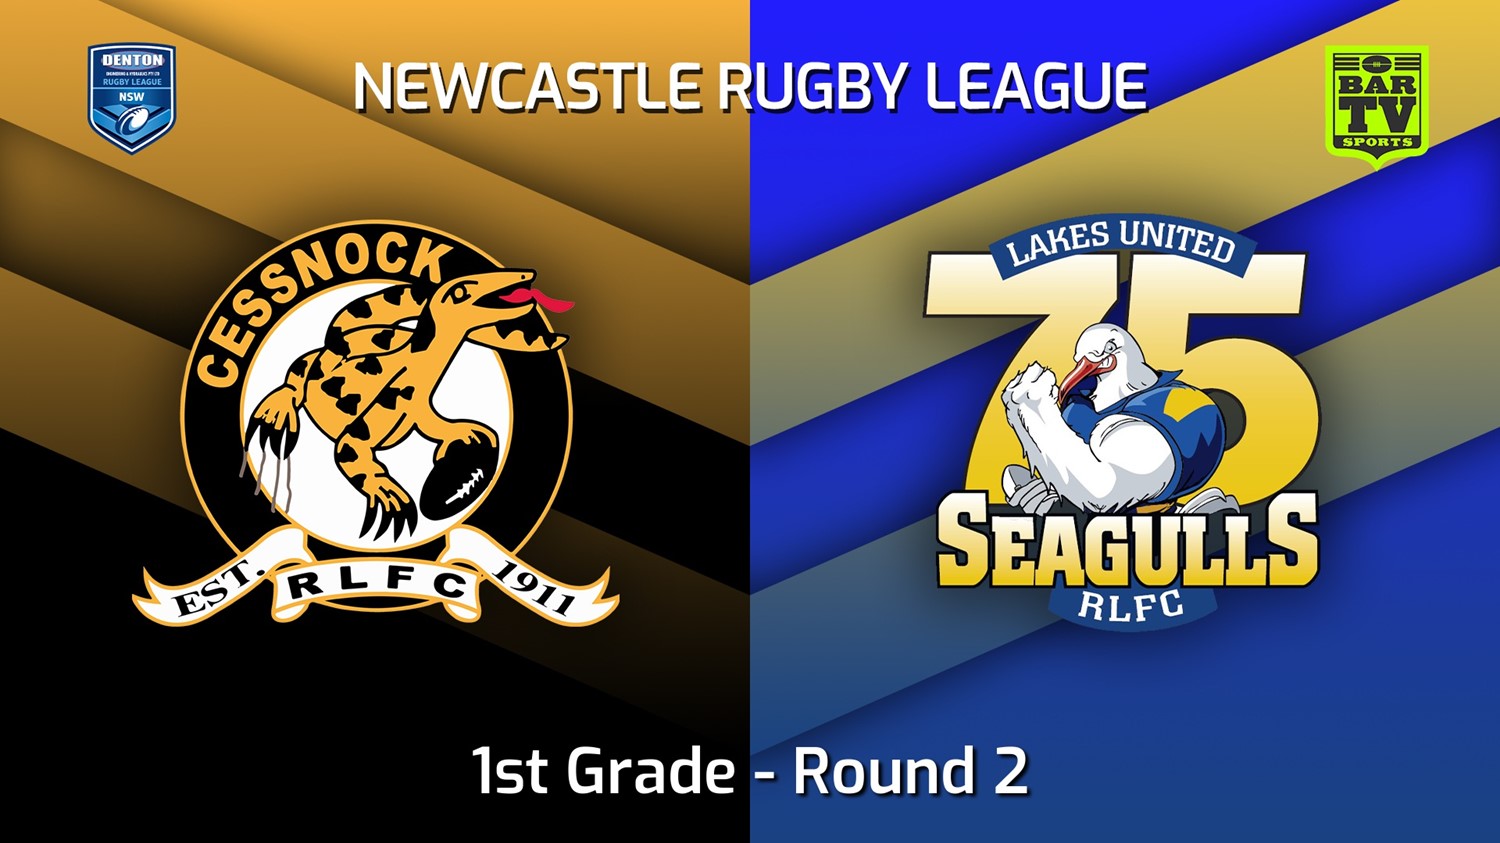 220402-Newcastle Round 2 - 1st Grade - Cessnock Goannas v Lakes United Minigame Slate Image